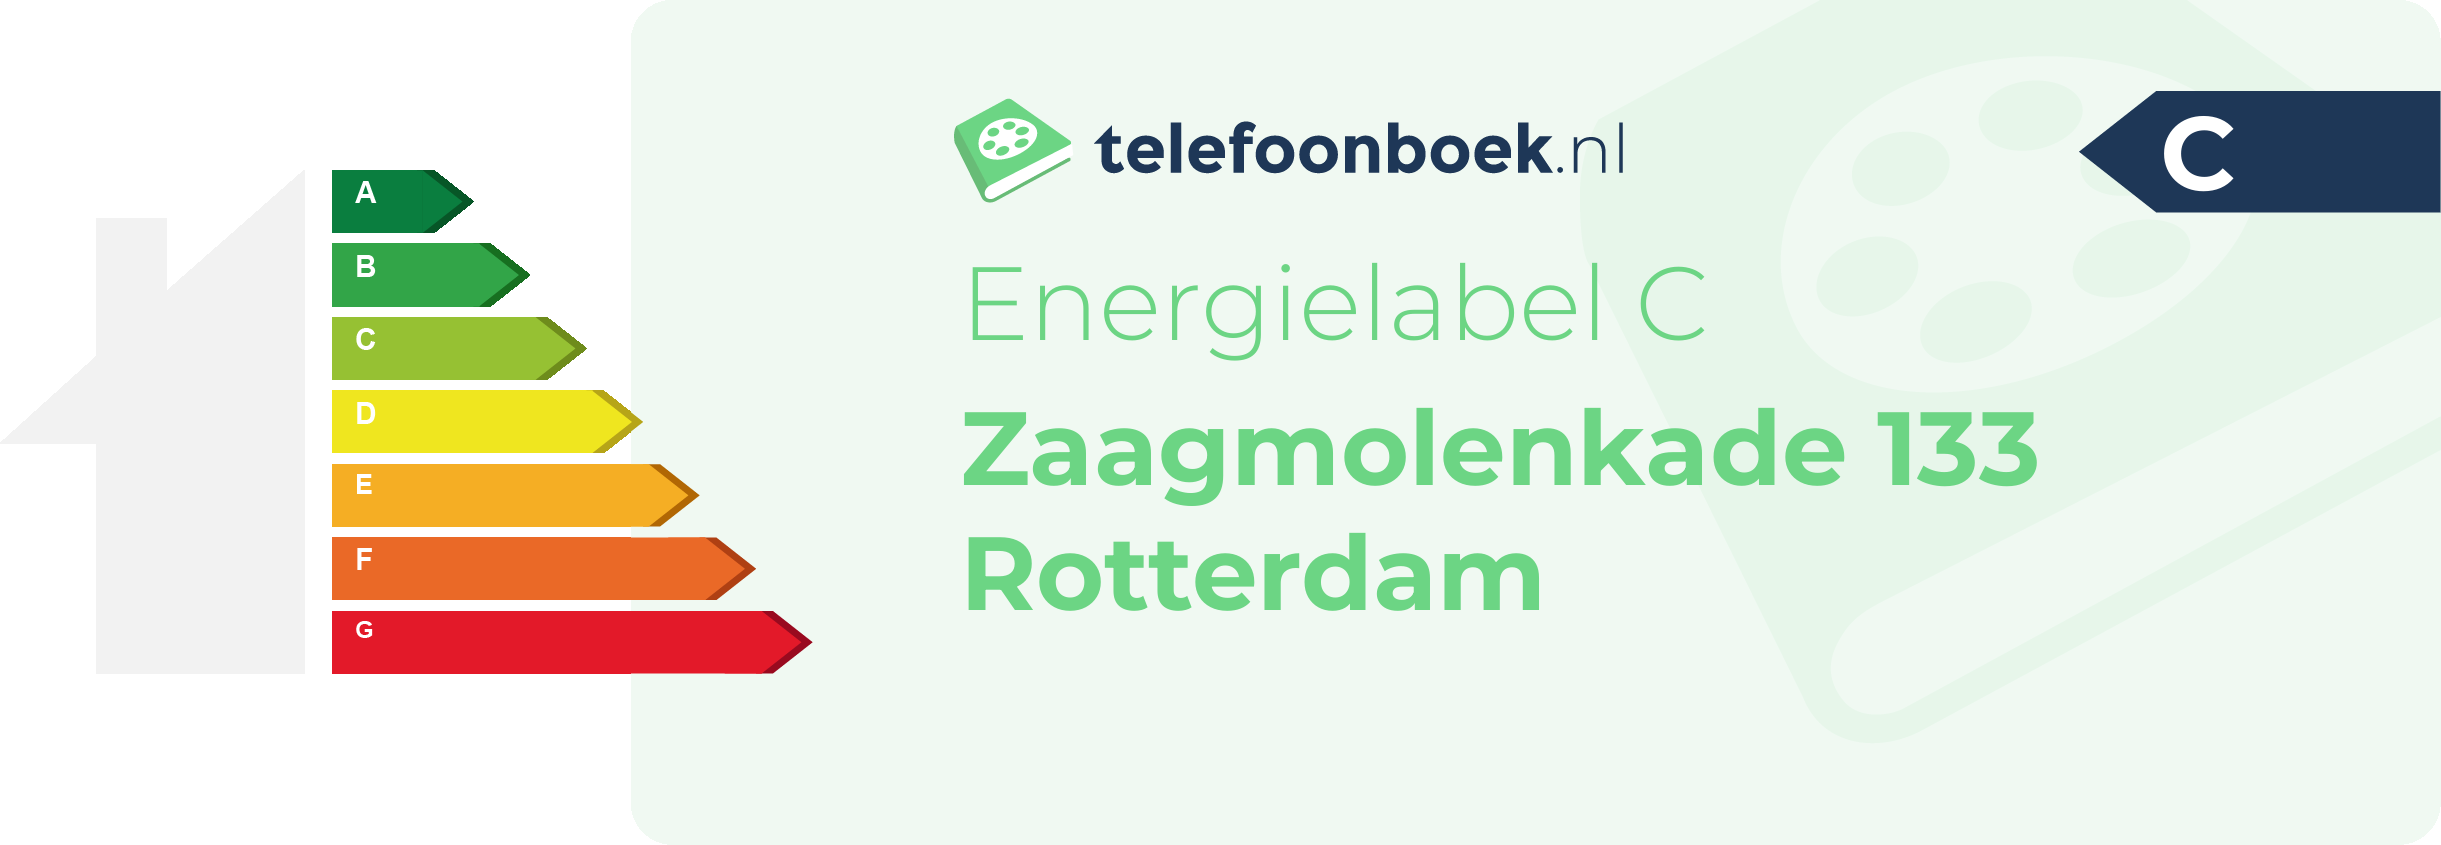 Energielabel Zaagmolenkade 133 Rotterdam